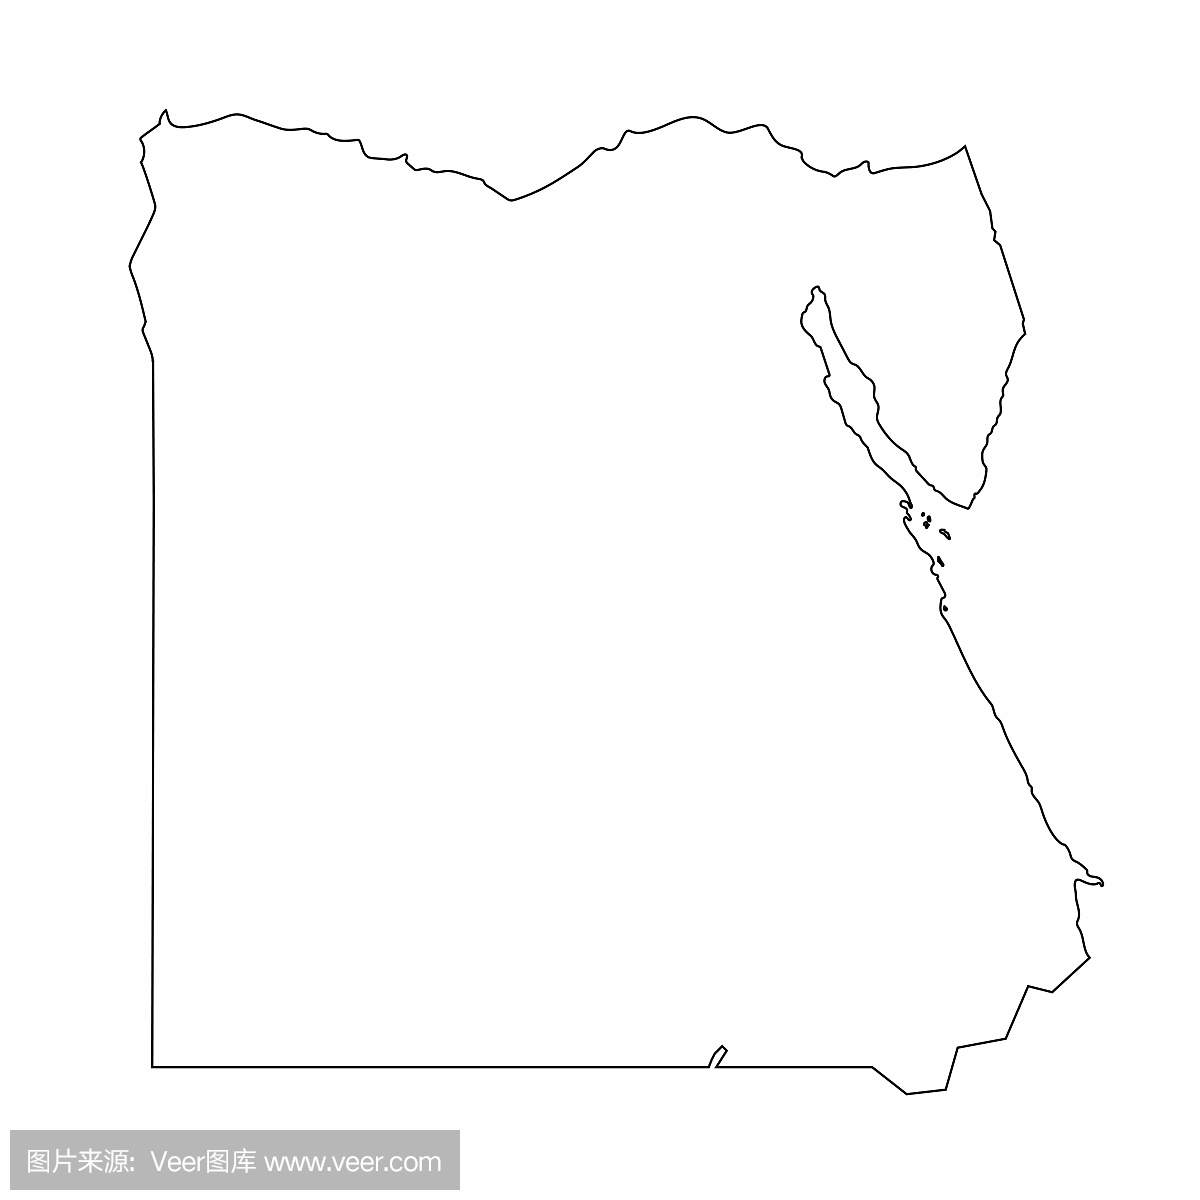 埃及地图轮廓图形徒手画在白色背景上。矢量图